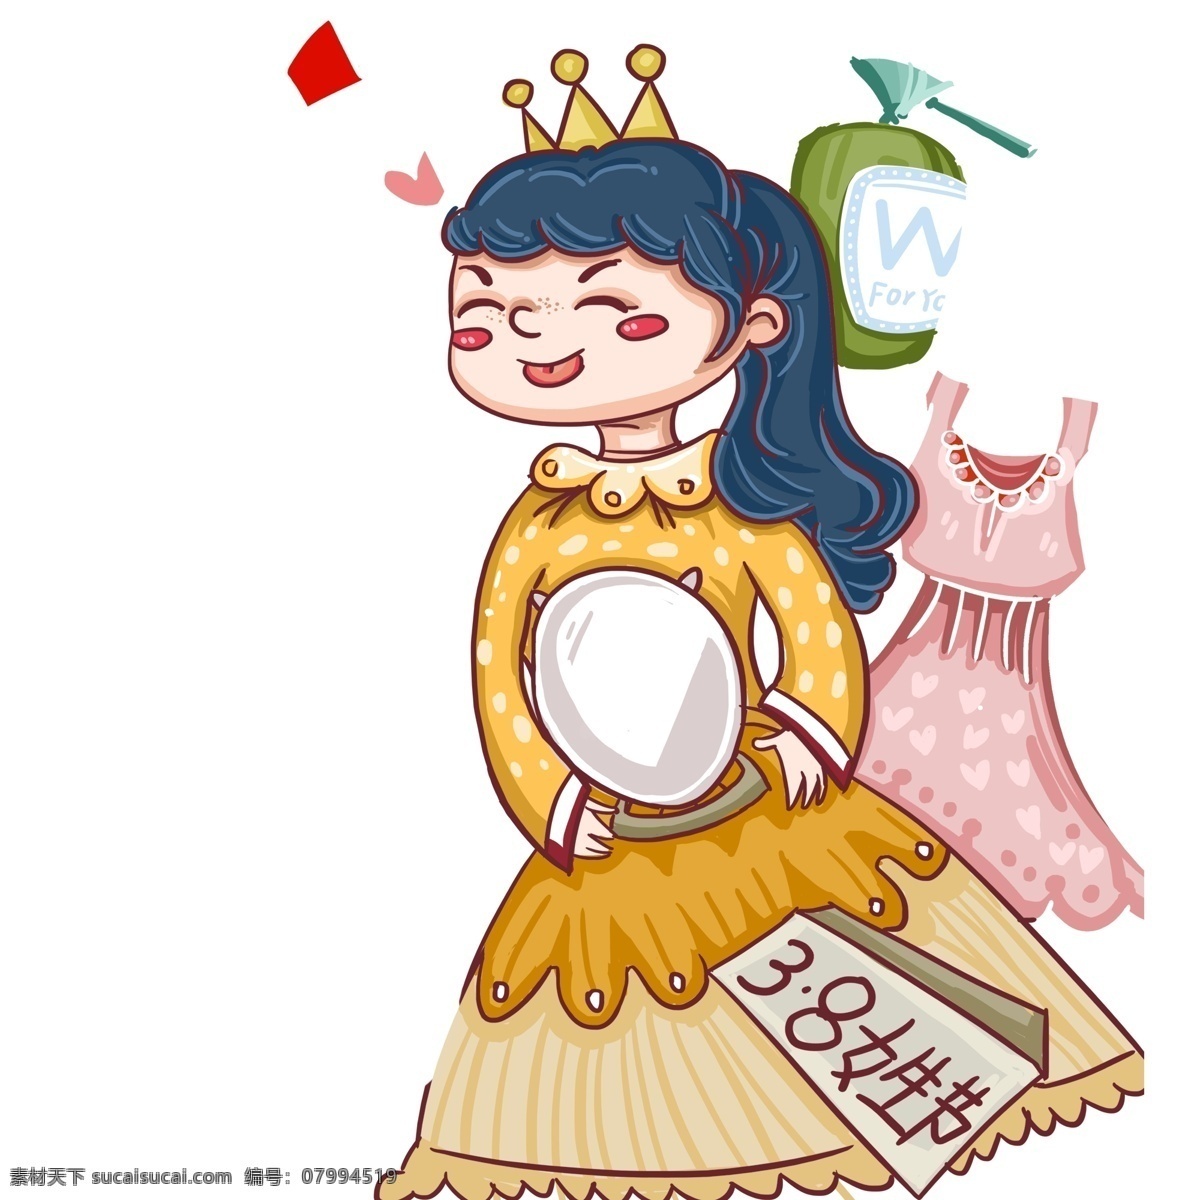 彩绘 可爱 化妆镜 小 公主 人物 手绘 女生 女孩 女王 皇冠 女王节 38